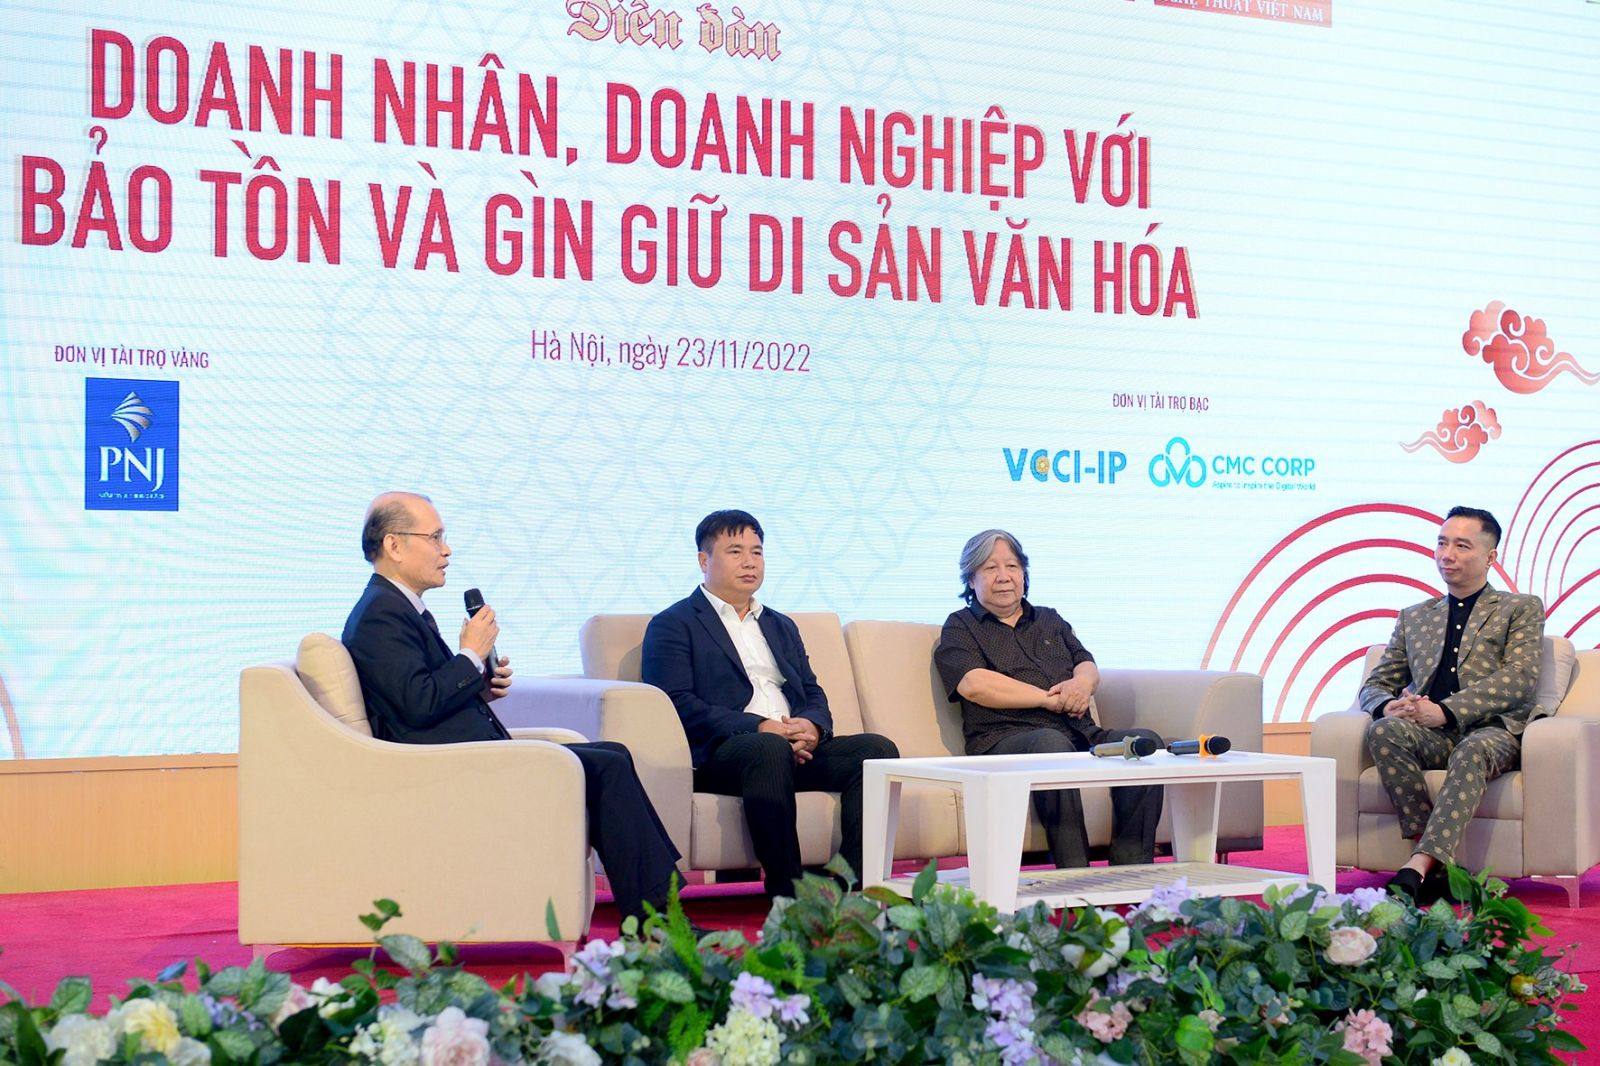  Diễn đàn “Doanh nhân, doanh nghiệp với bảo tồn và gìn giữ di sản văn hoá” do tạp chí Diễn đàn Doanh nghiệp phối hợp với Trung tâm UNESCO hỗ trợ và phát triển nghệ thuật Việt Nam tổ chức. Ảnh: Quốc Tuấn